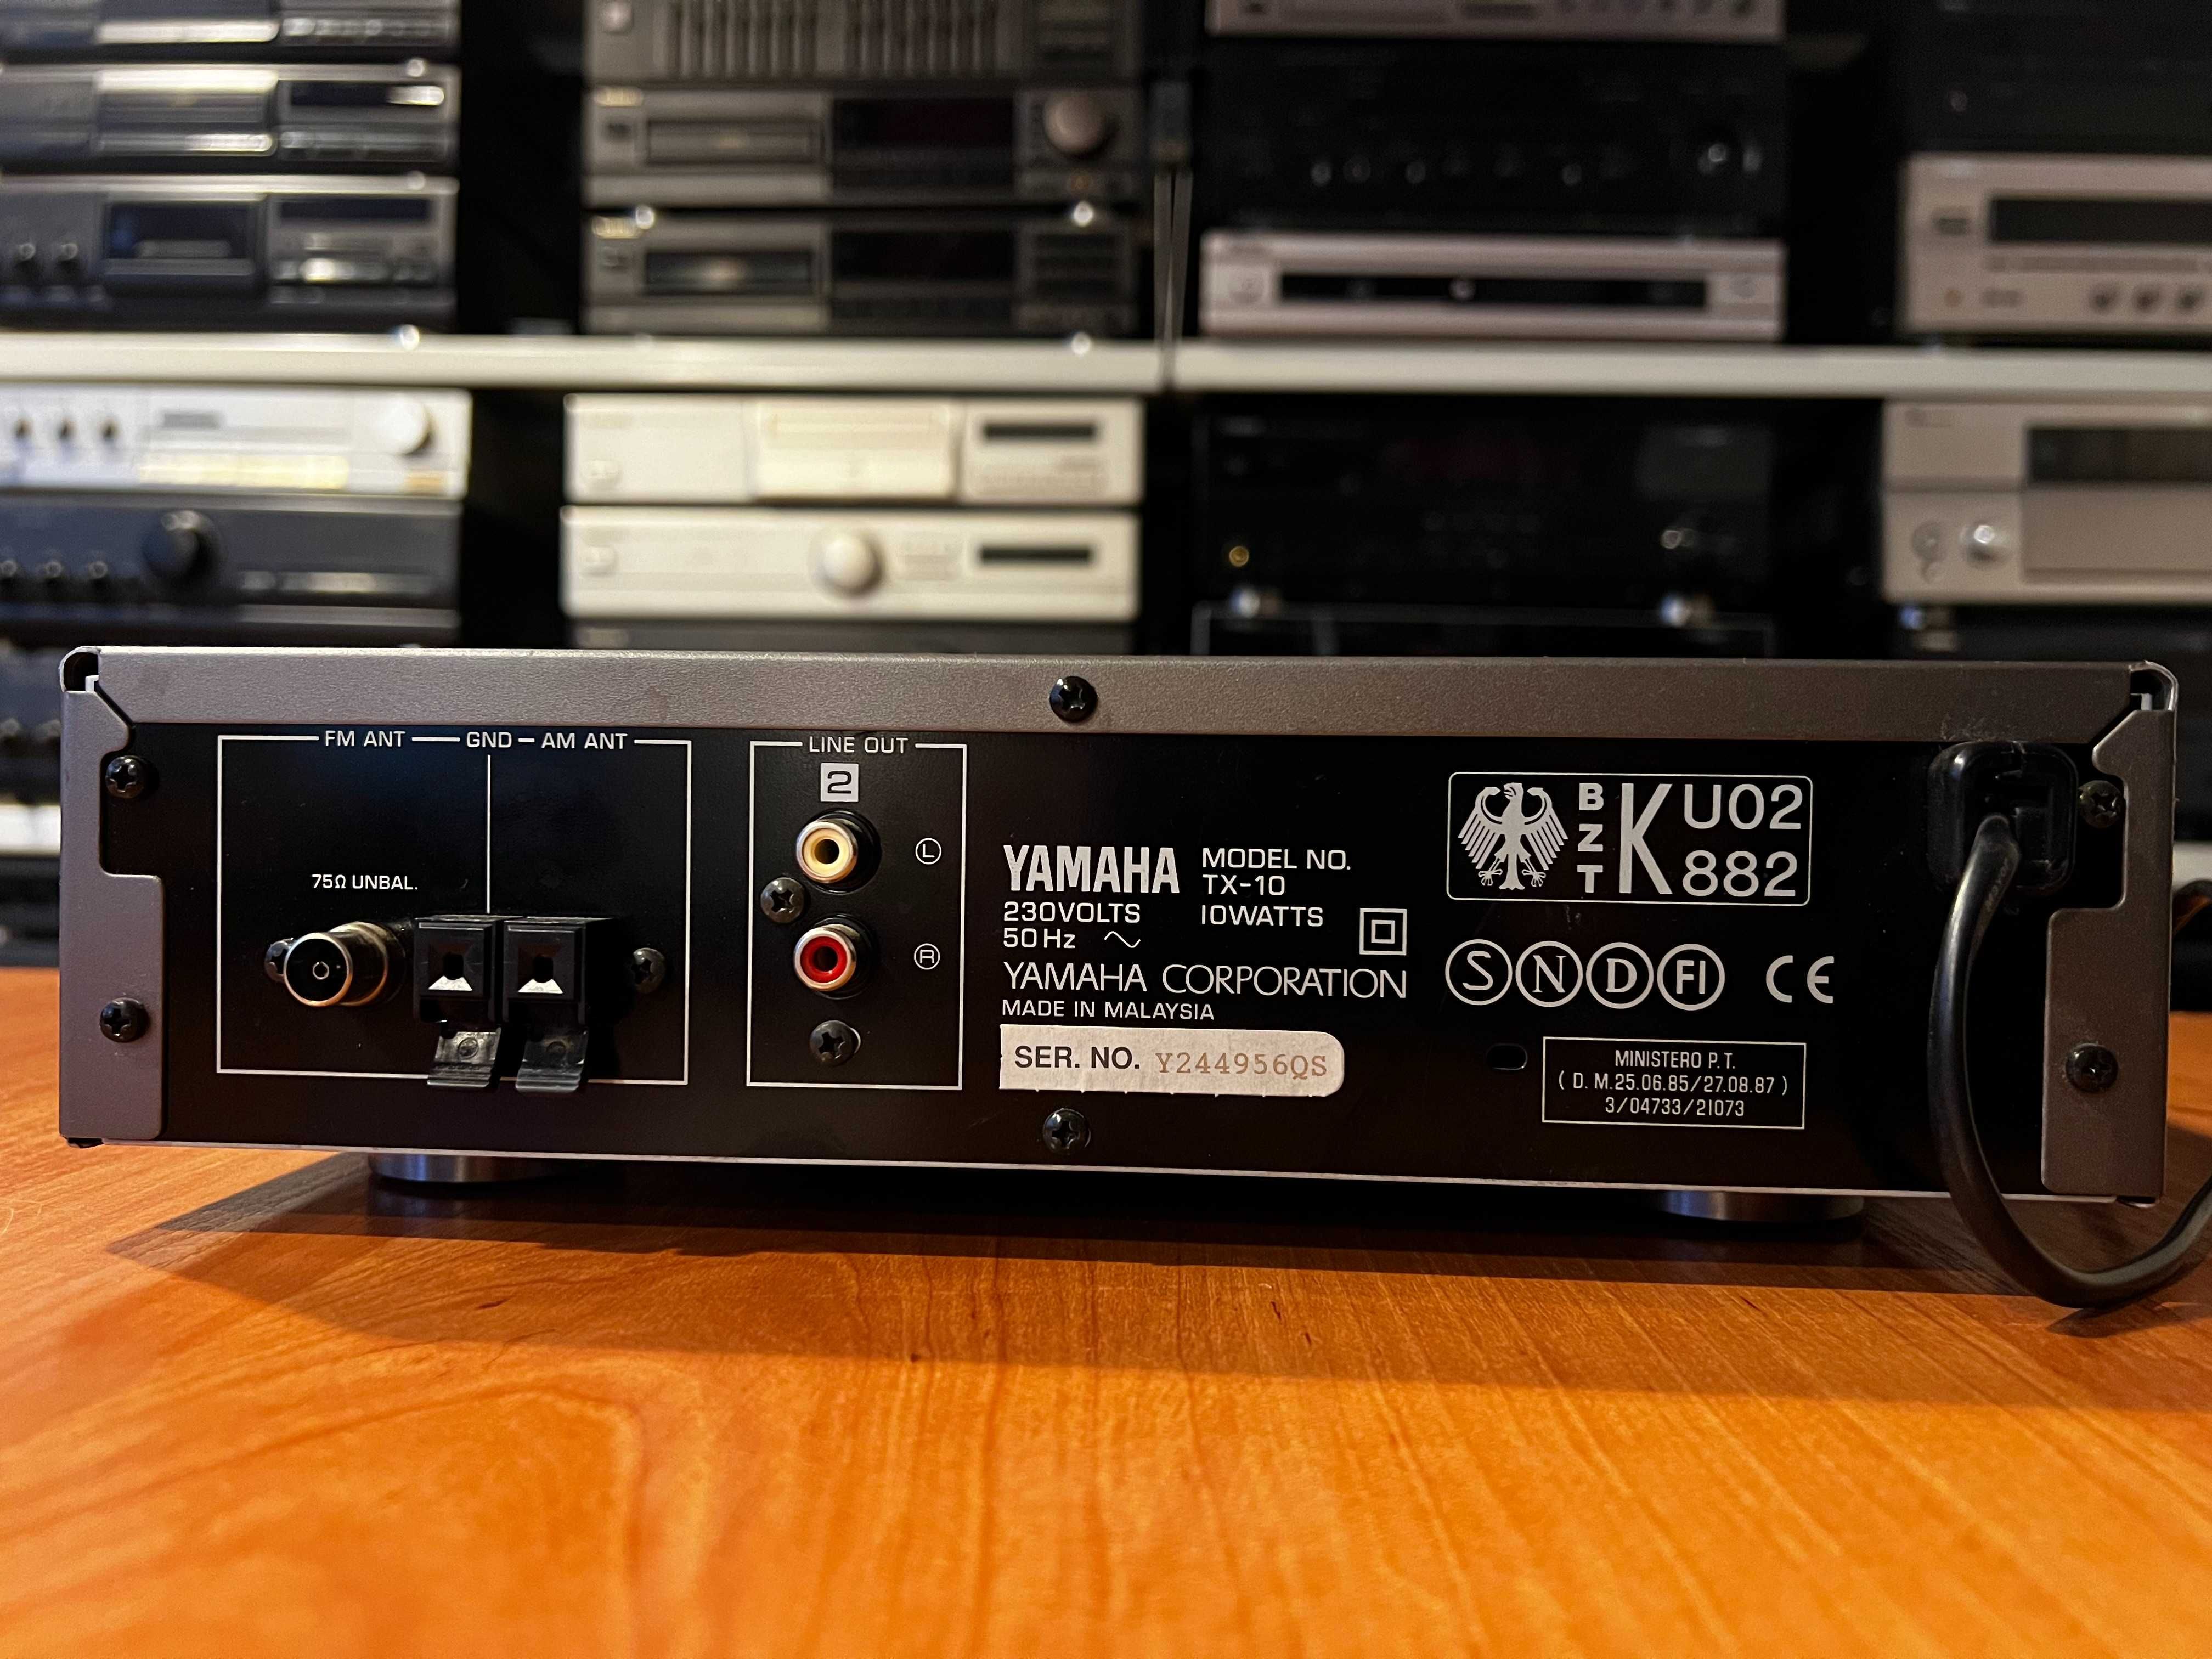 Tuner Yamaha TX-10 RDS Audio Room